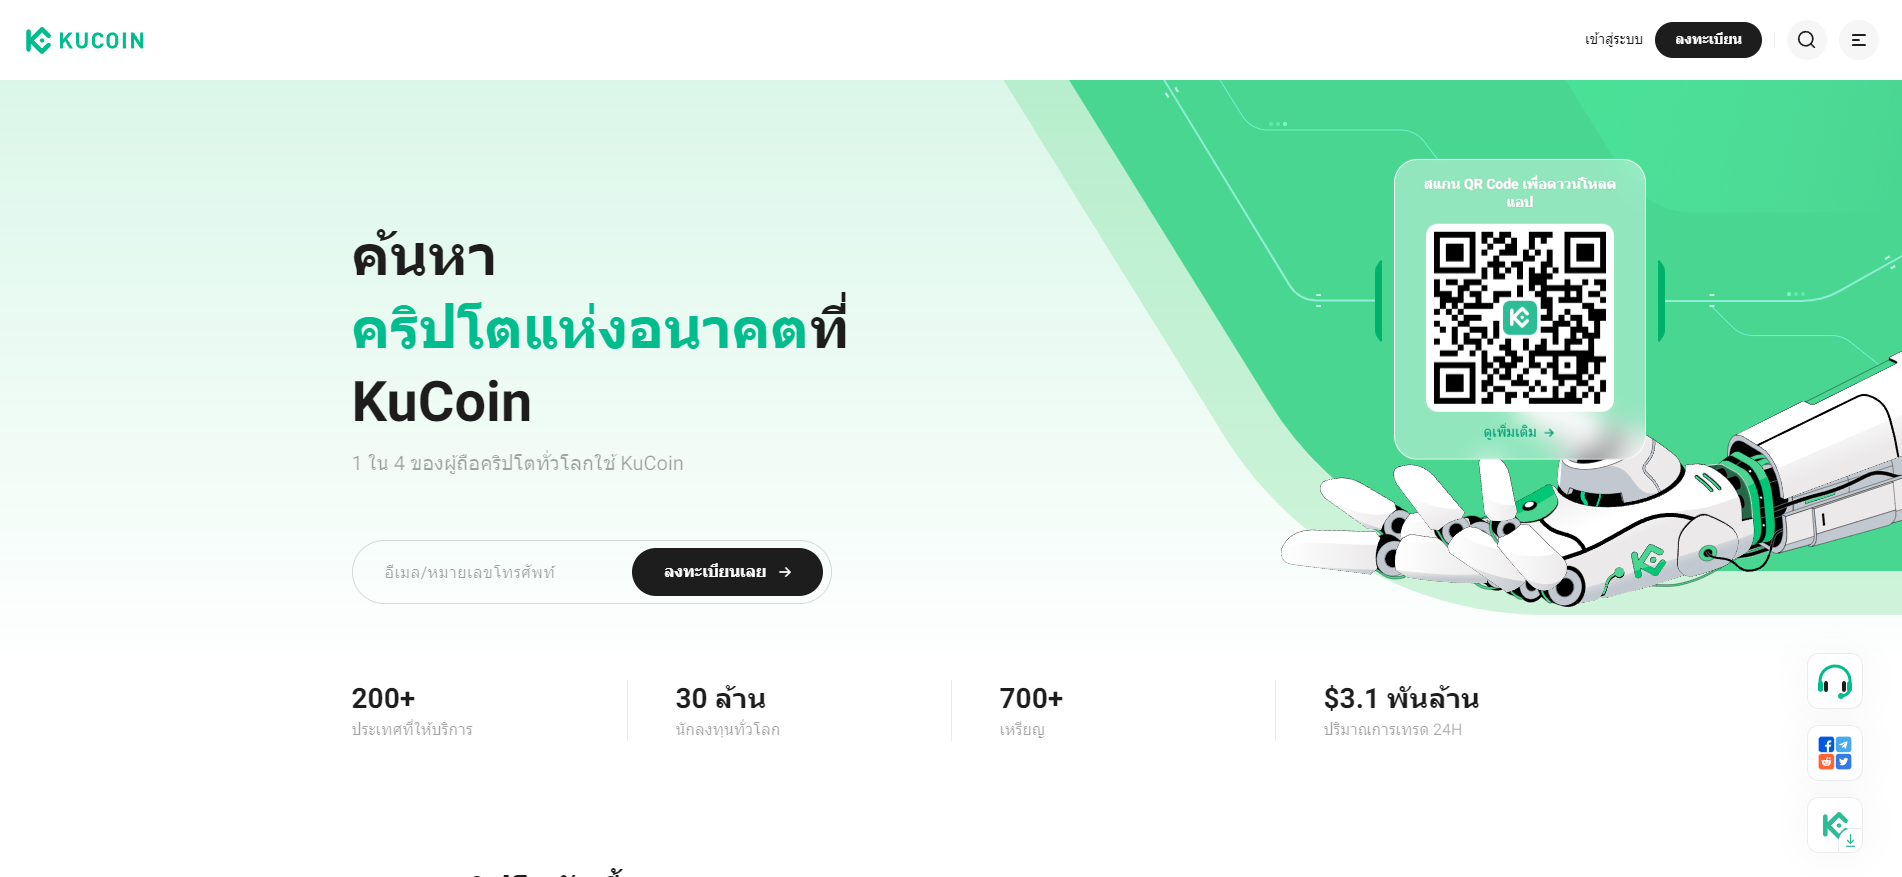 แฟลตฟอร์มซื้อขาย Bitcoin ที่ฮอตฮิตในไทย - Kucoin